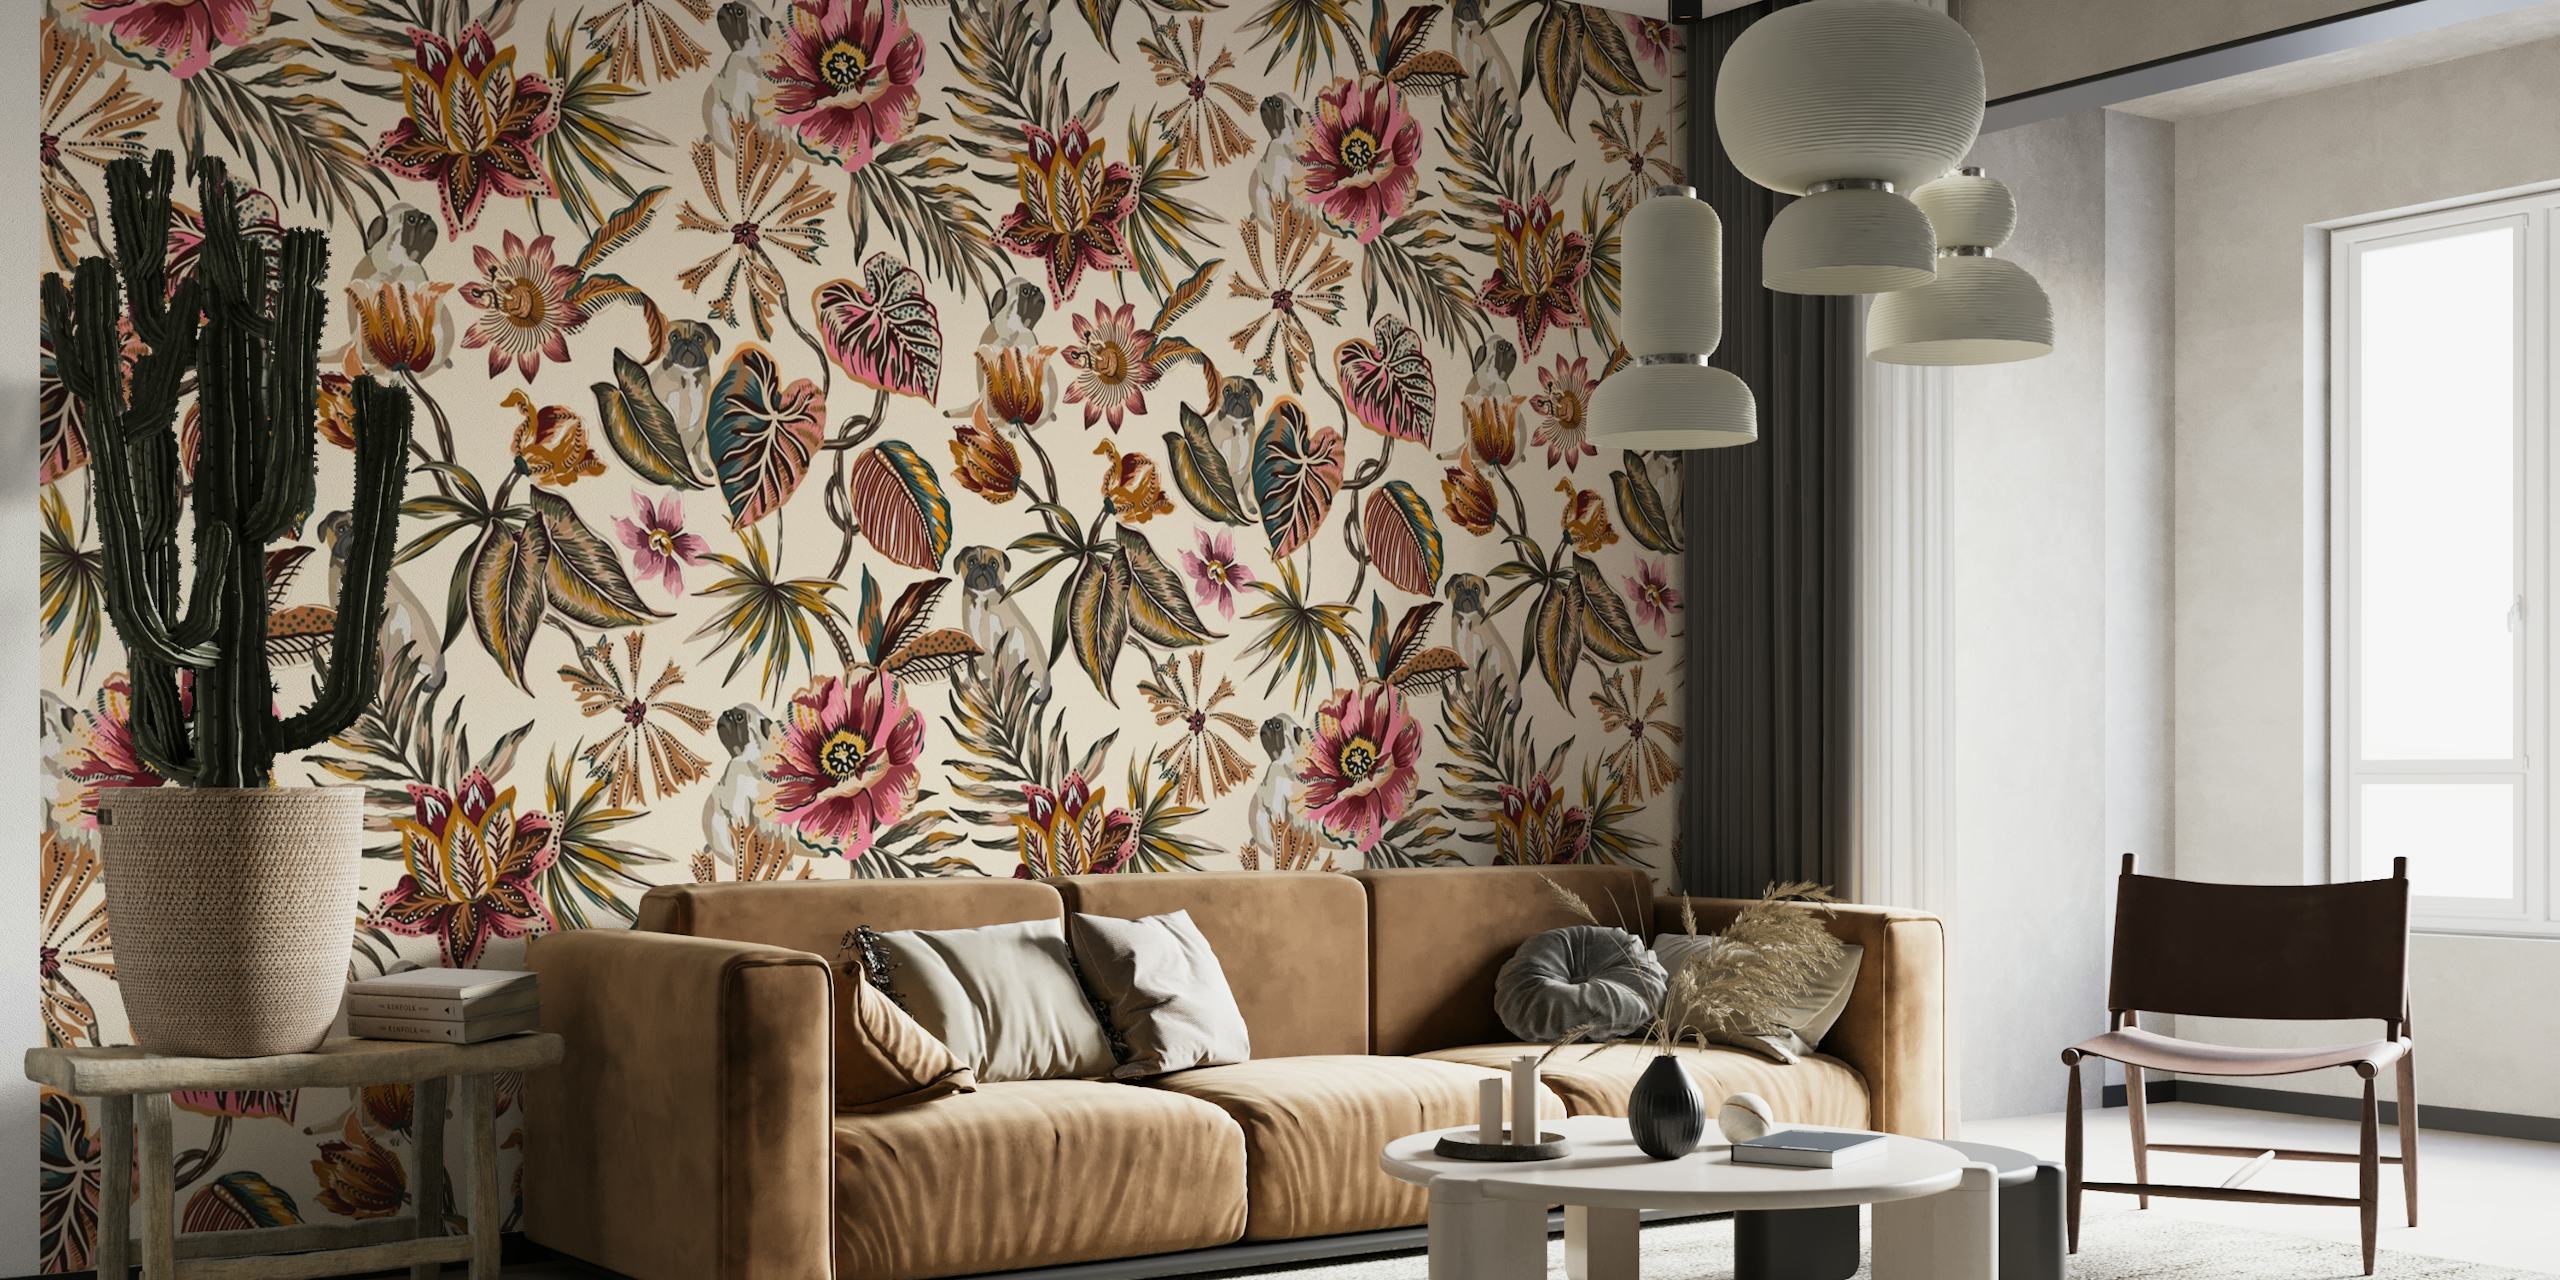 Zidna slika u boemskom stilu s mopsima i cvjetnim uzorcima